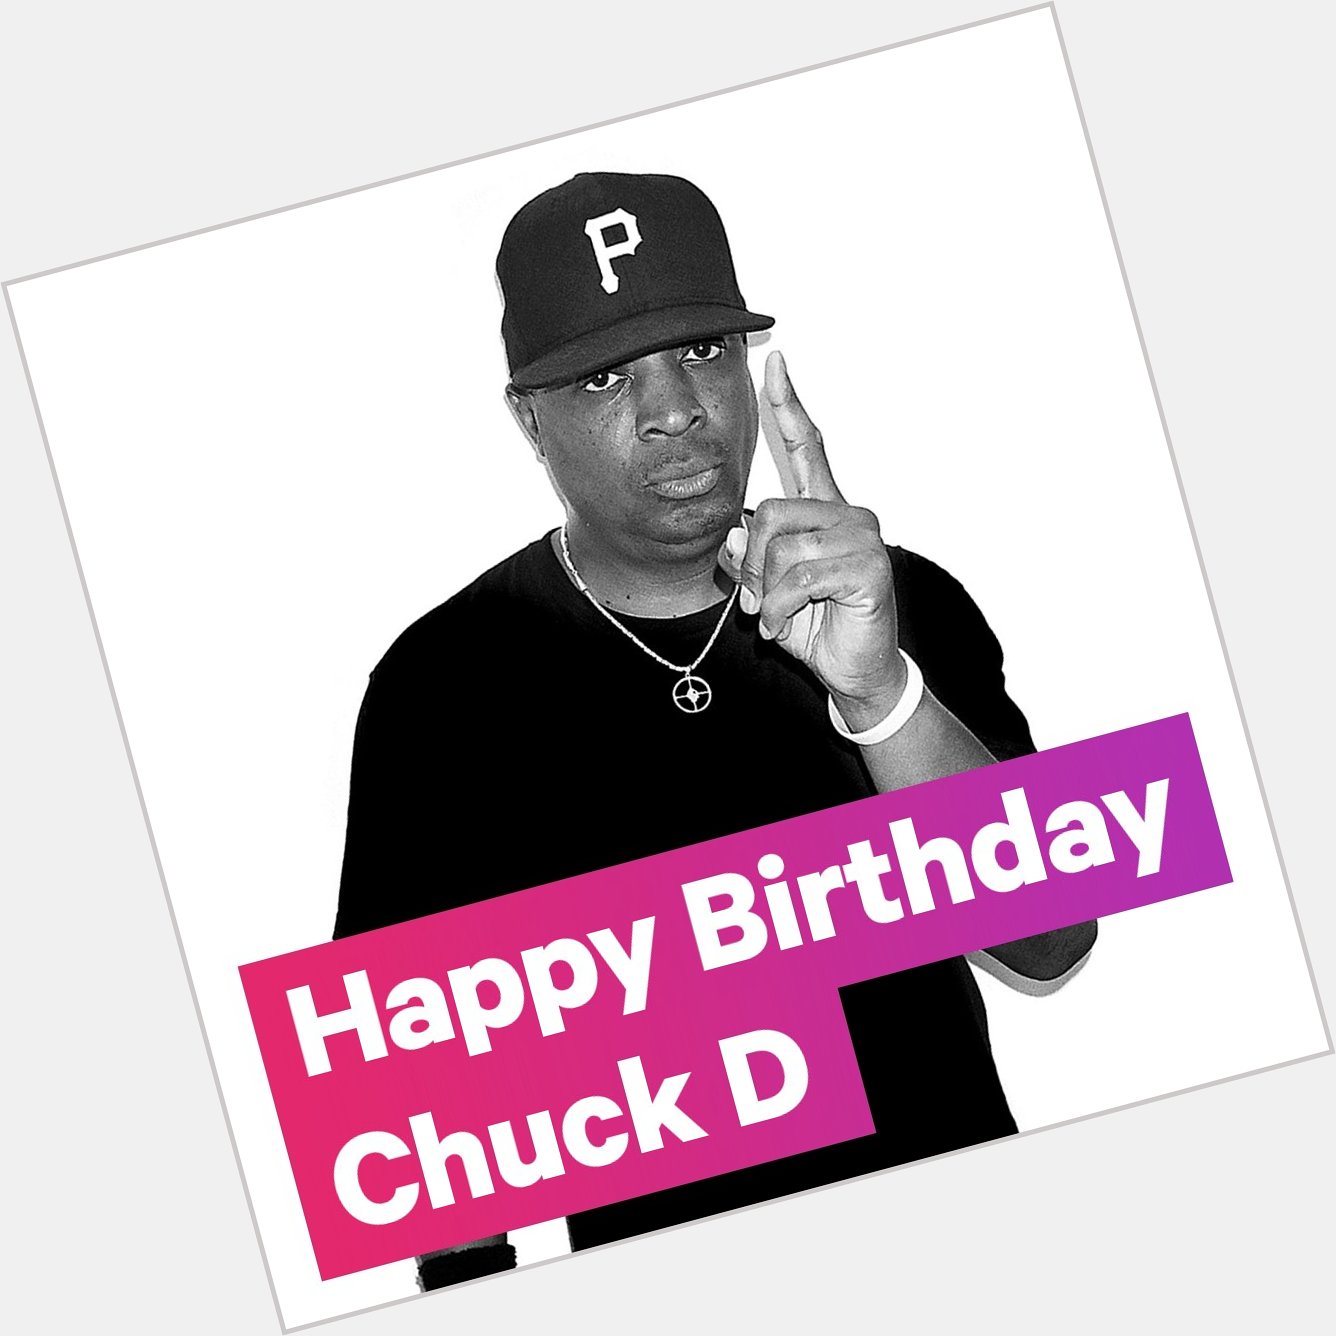 Tracklib wishes Chuck D a happy birthday! 